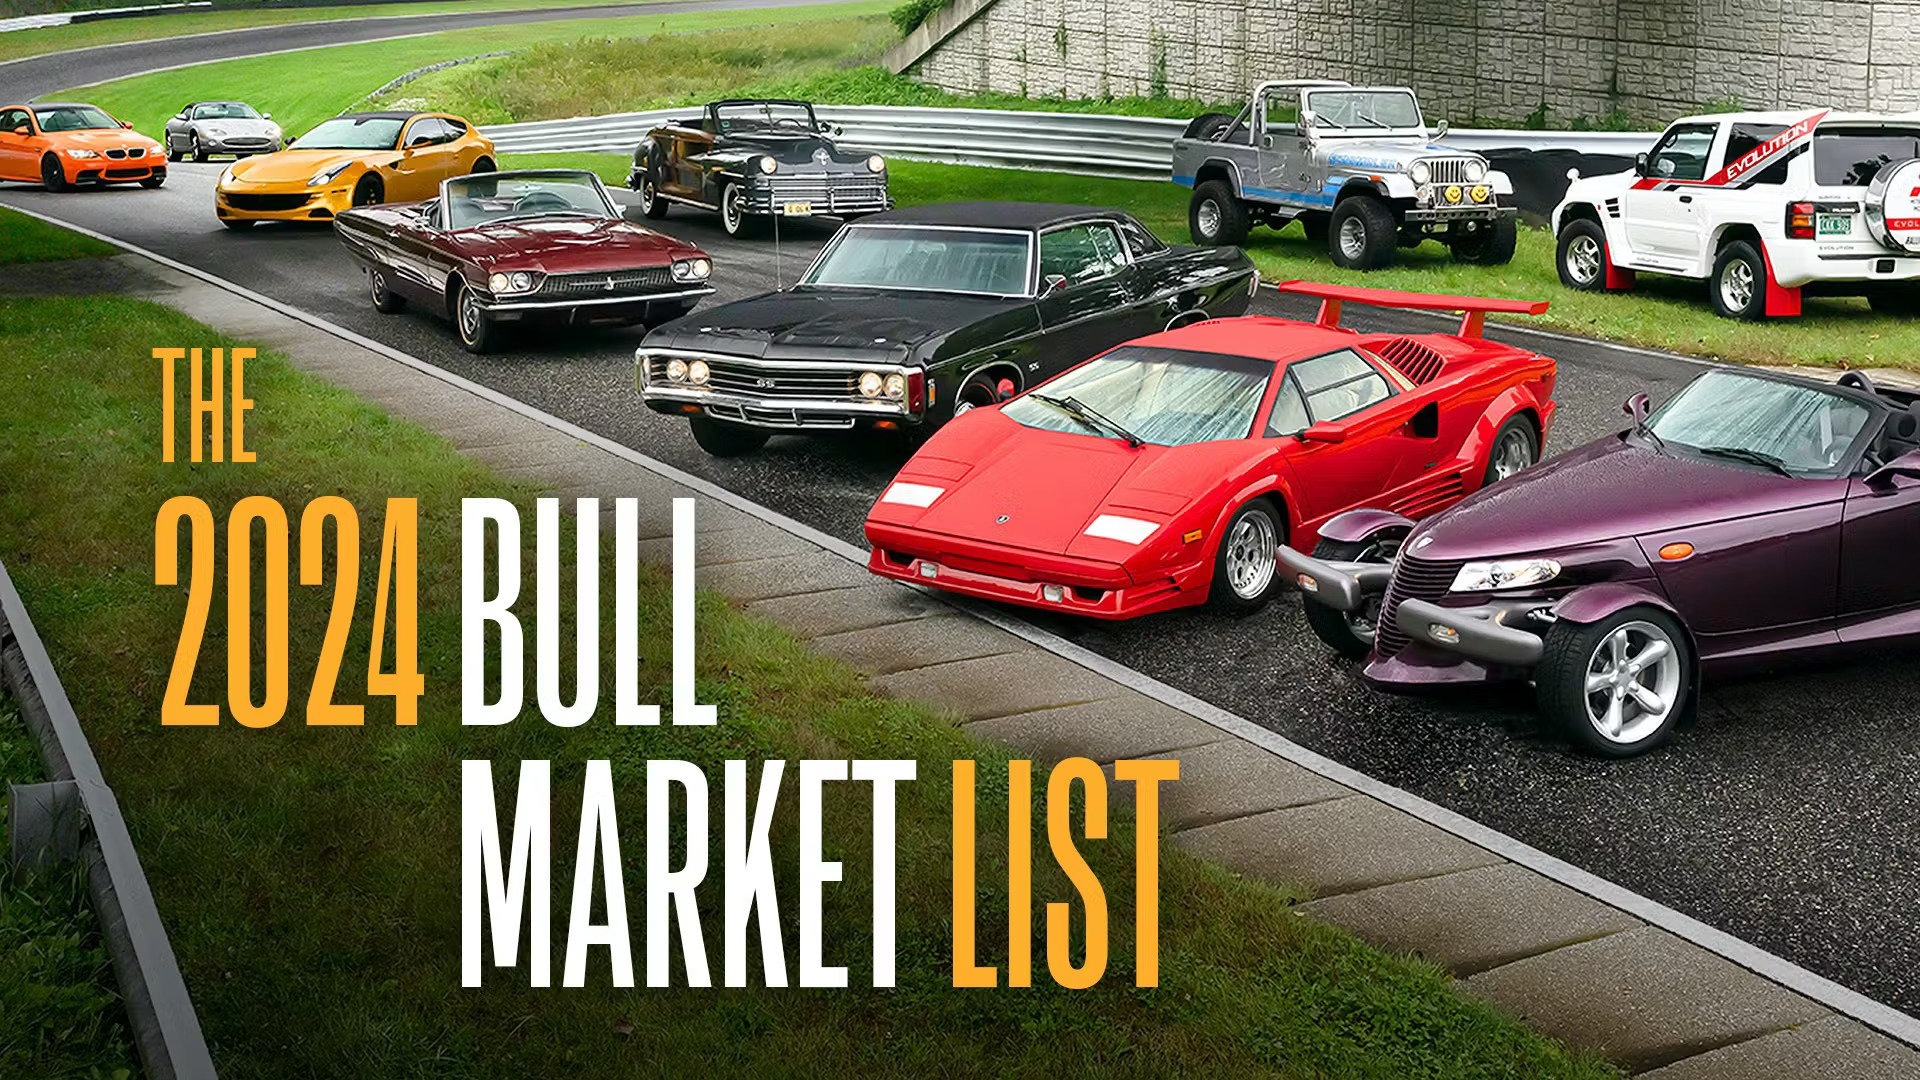 2024 Bull Market List: 10 entusiastbiler du bør kjøpe nå!